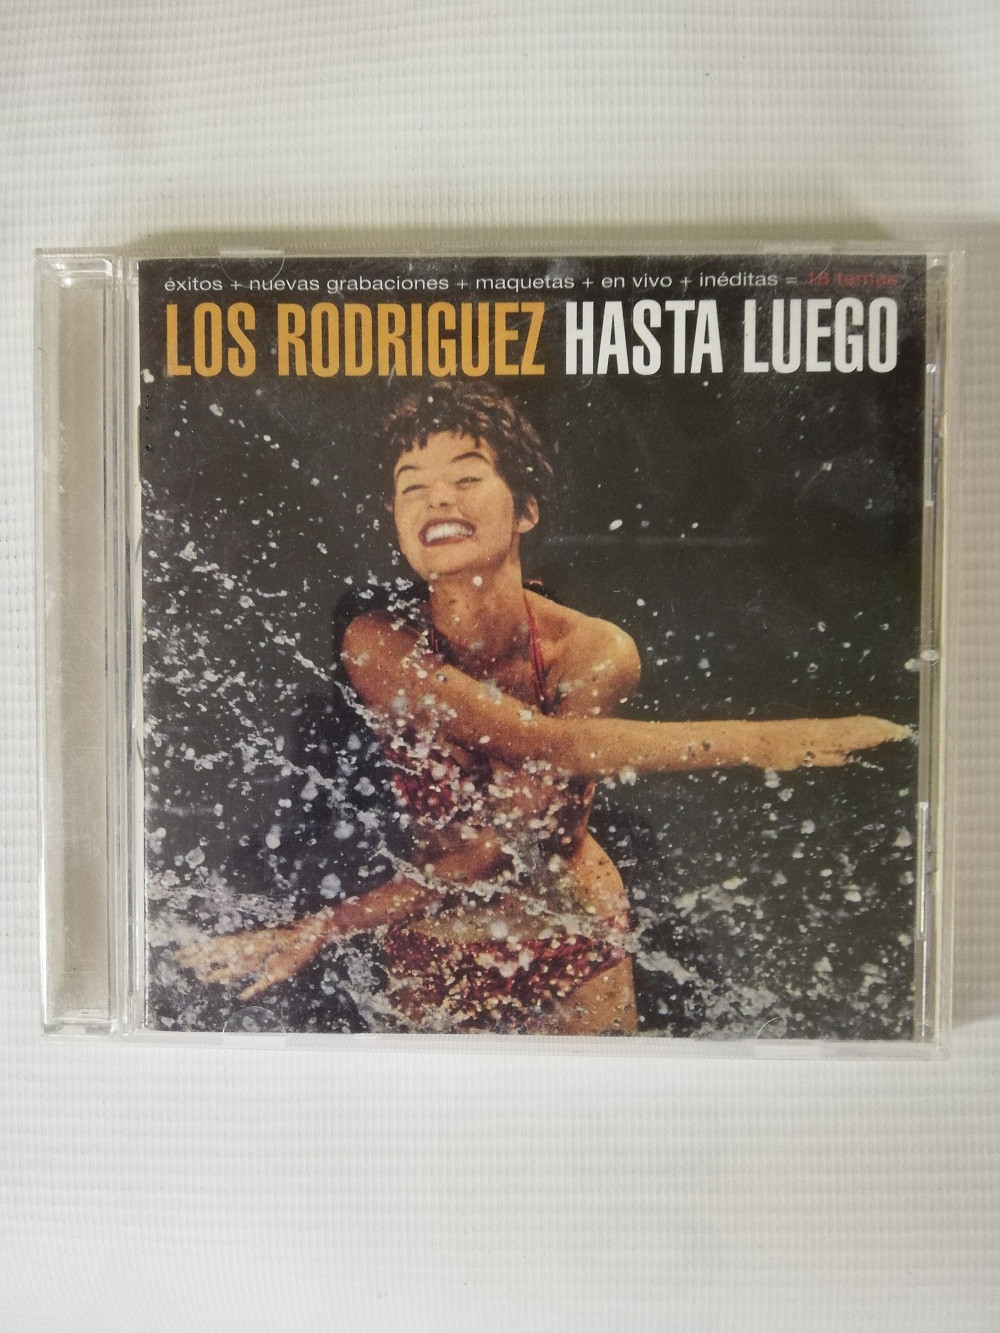 Imagen CD LOS RODRIGUEZ - HASTA LUEGO 1